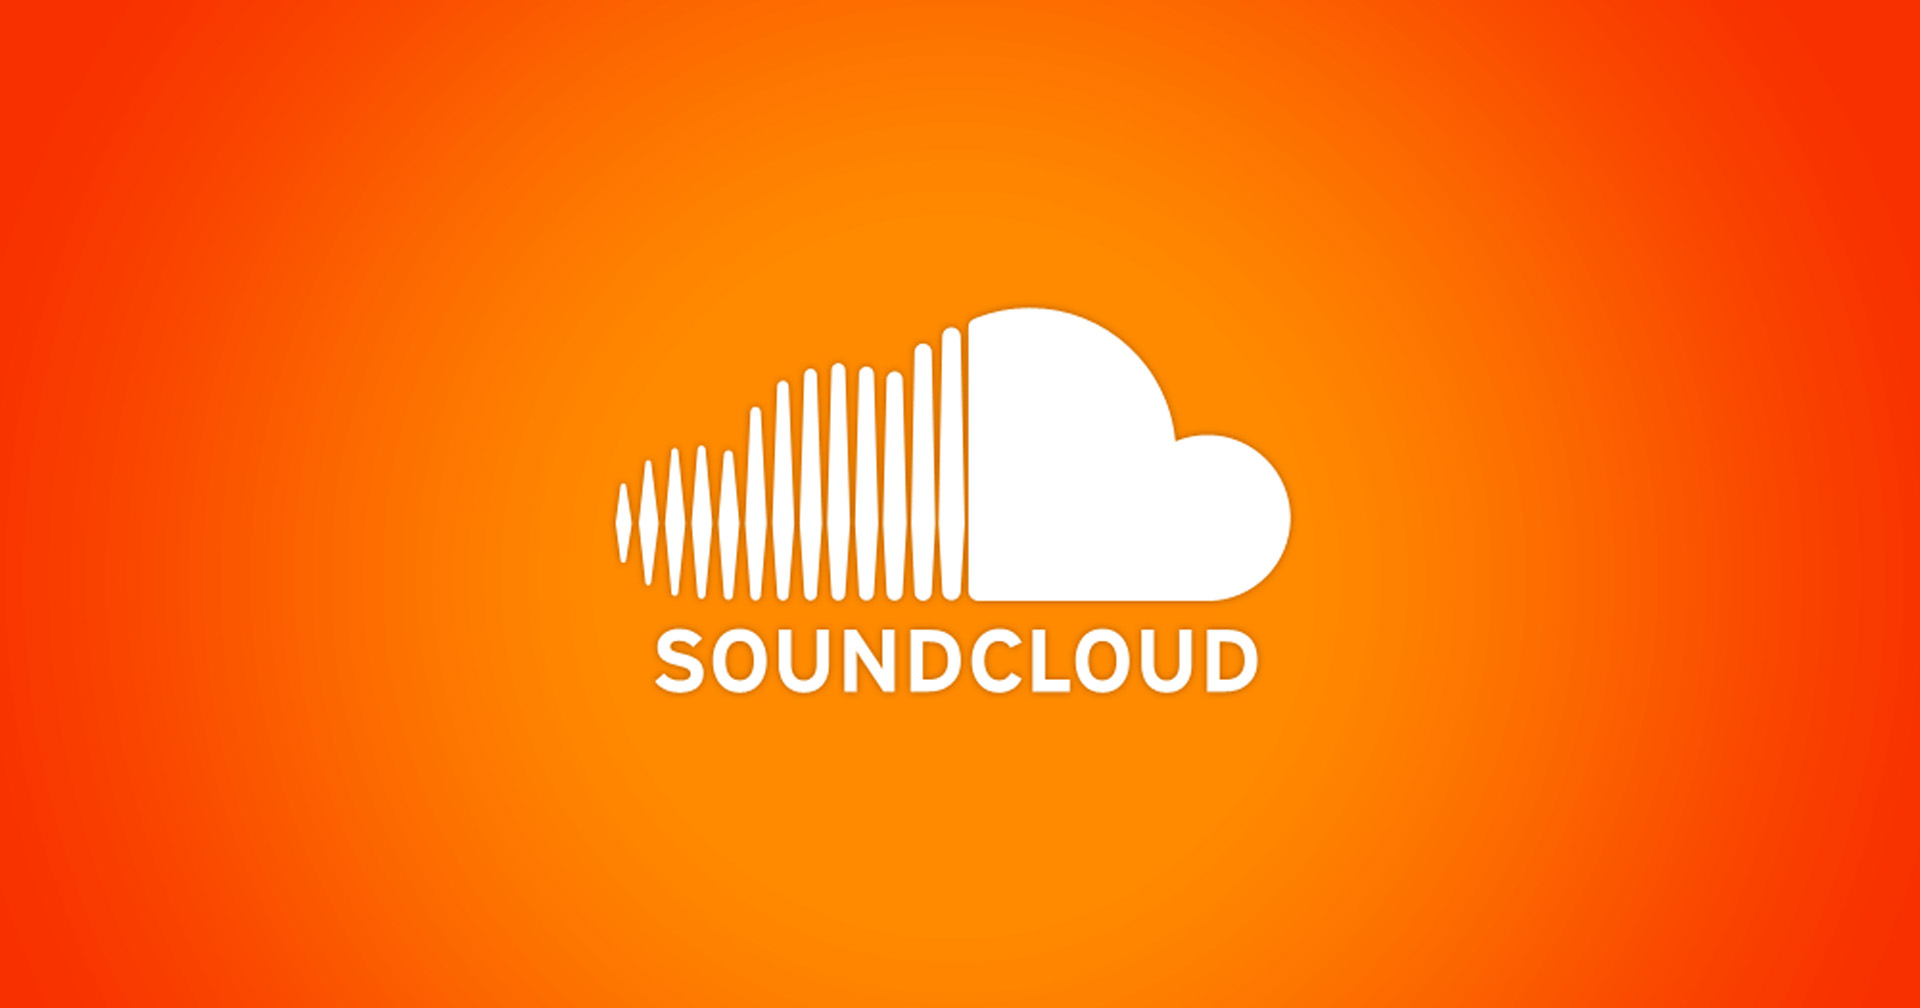 Soundcloud จะเลิกจ้างพนักงาน 8% โดยหวังว่าจะมีผลกำไรจากการปรับโครงสร้างครั้งนี้